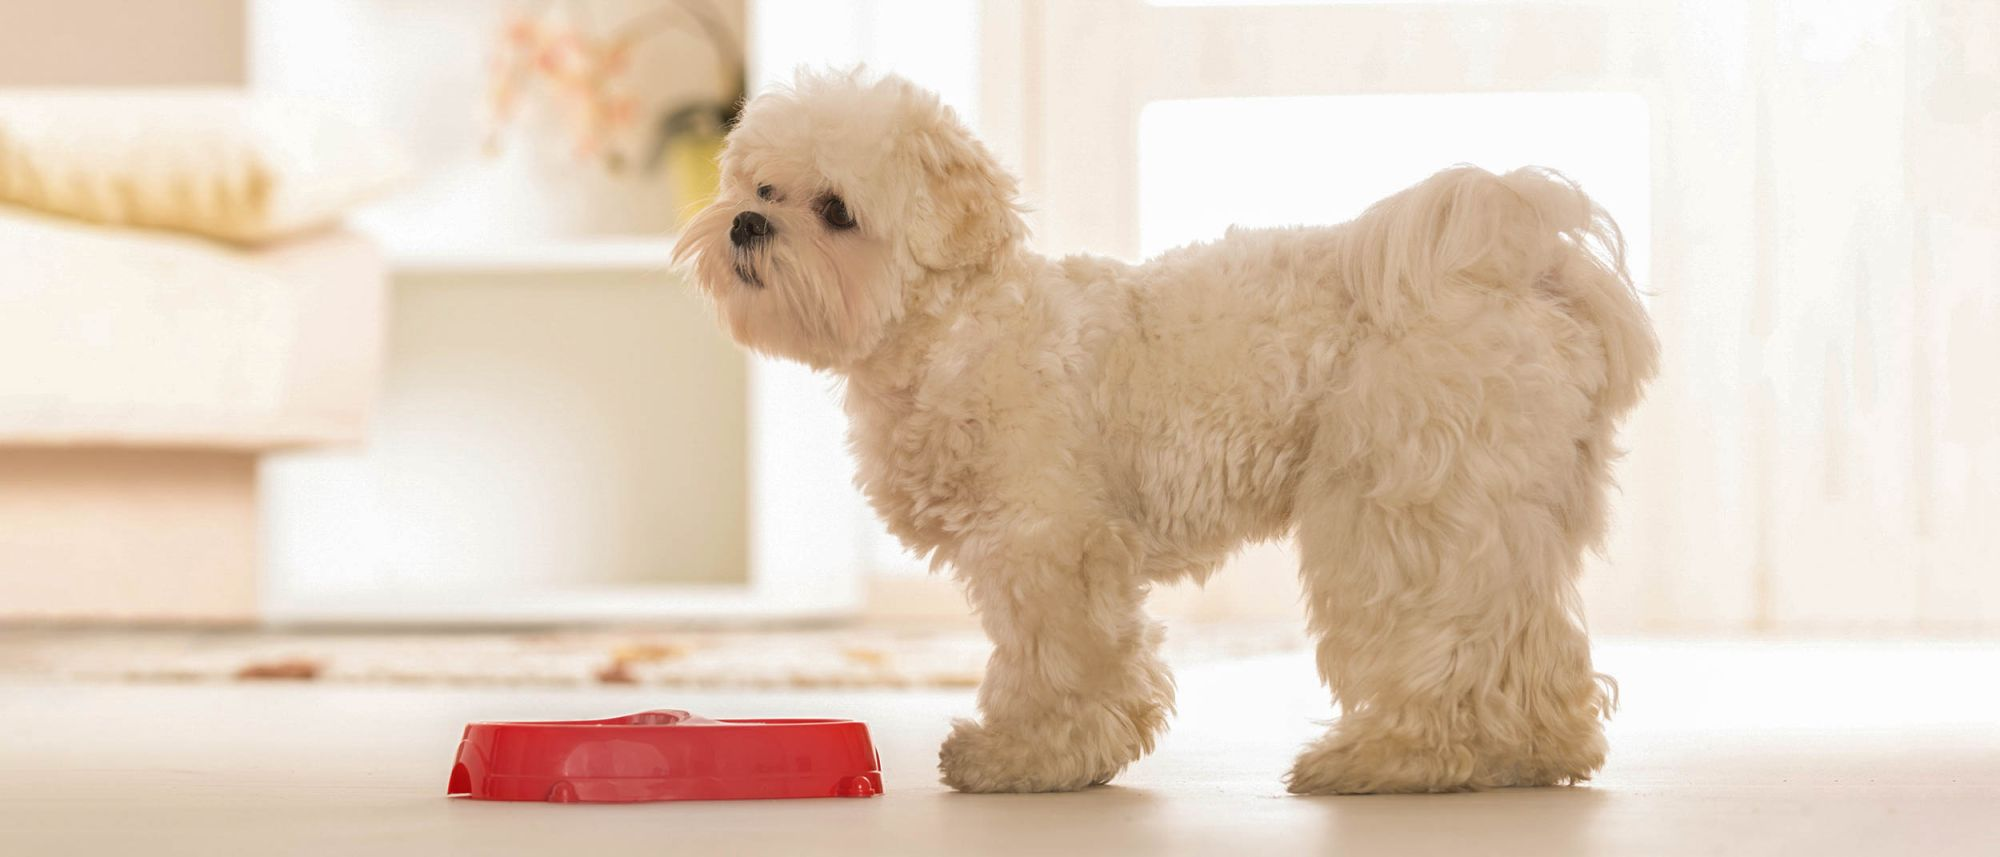 Lille hund, som står indendørs ved siden af en rød hundeskål